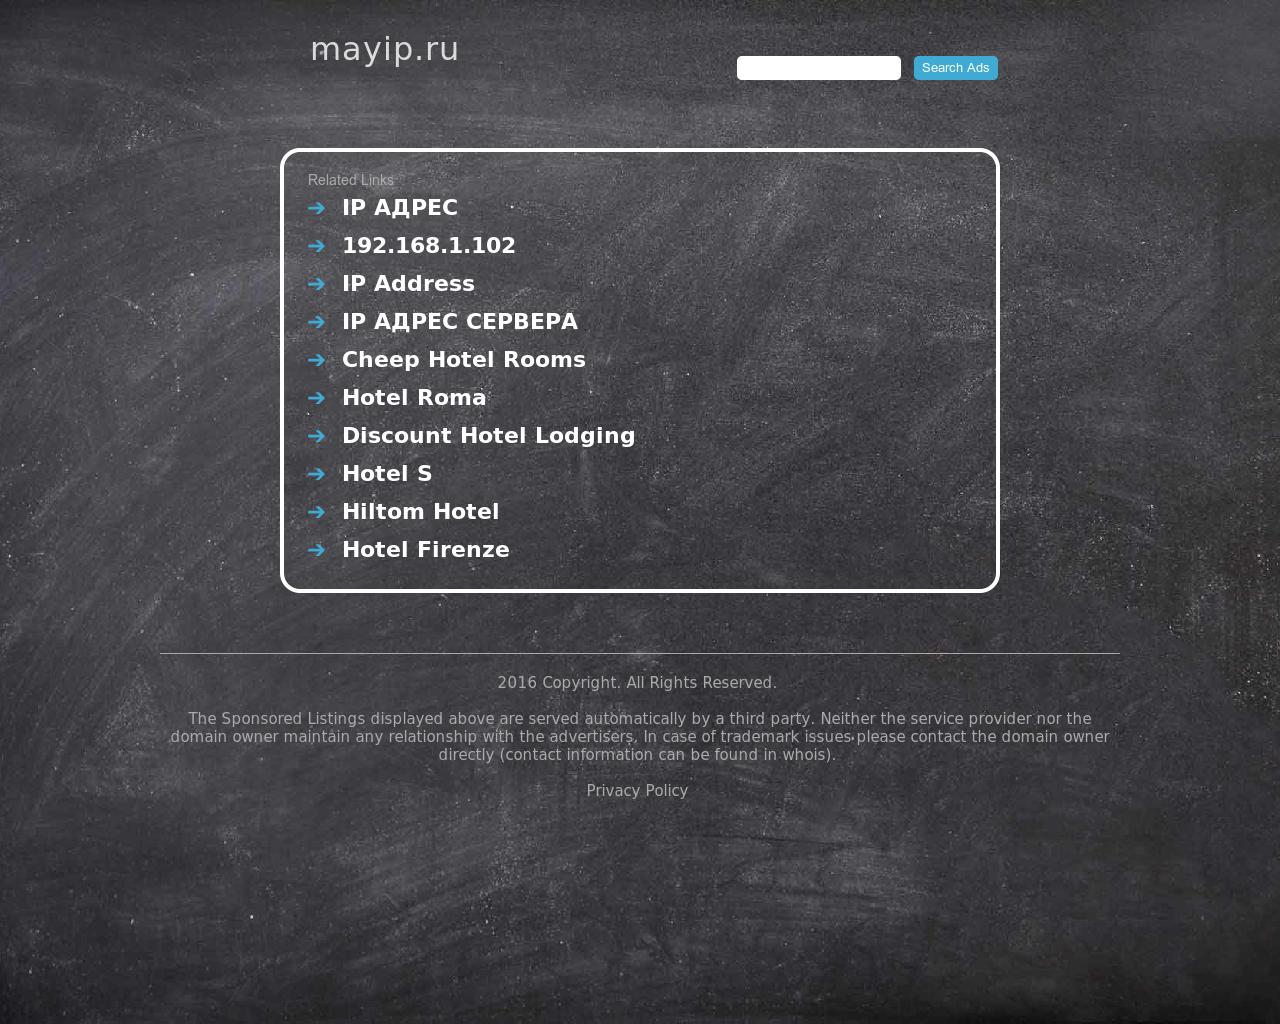 Изображение сайта mayip.ru в разрешении 1280x1024